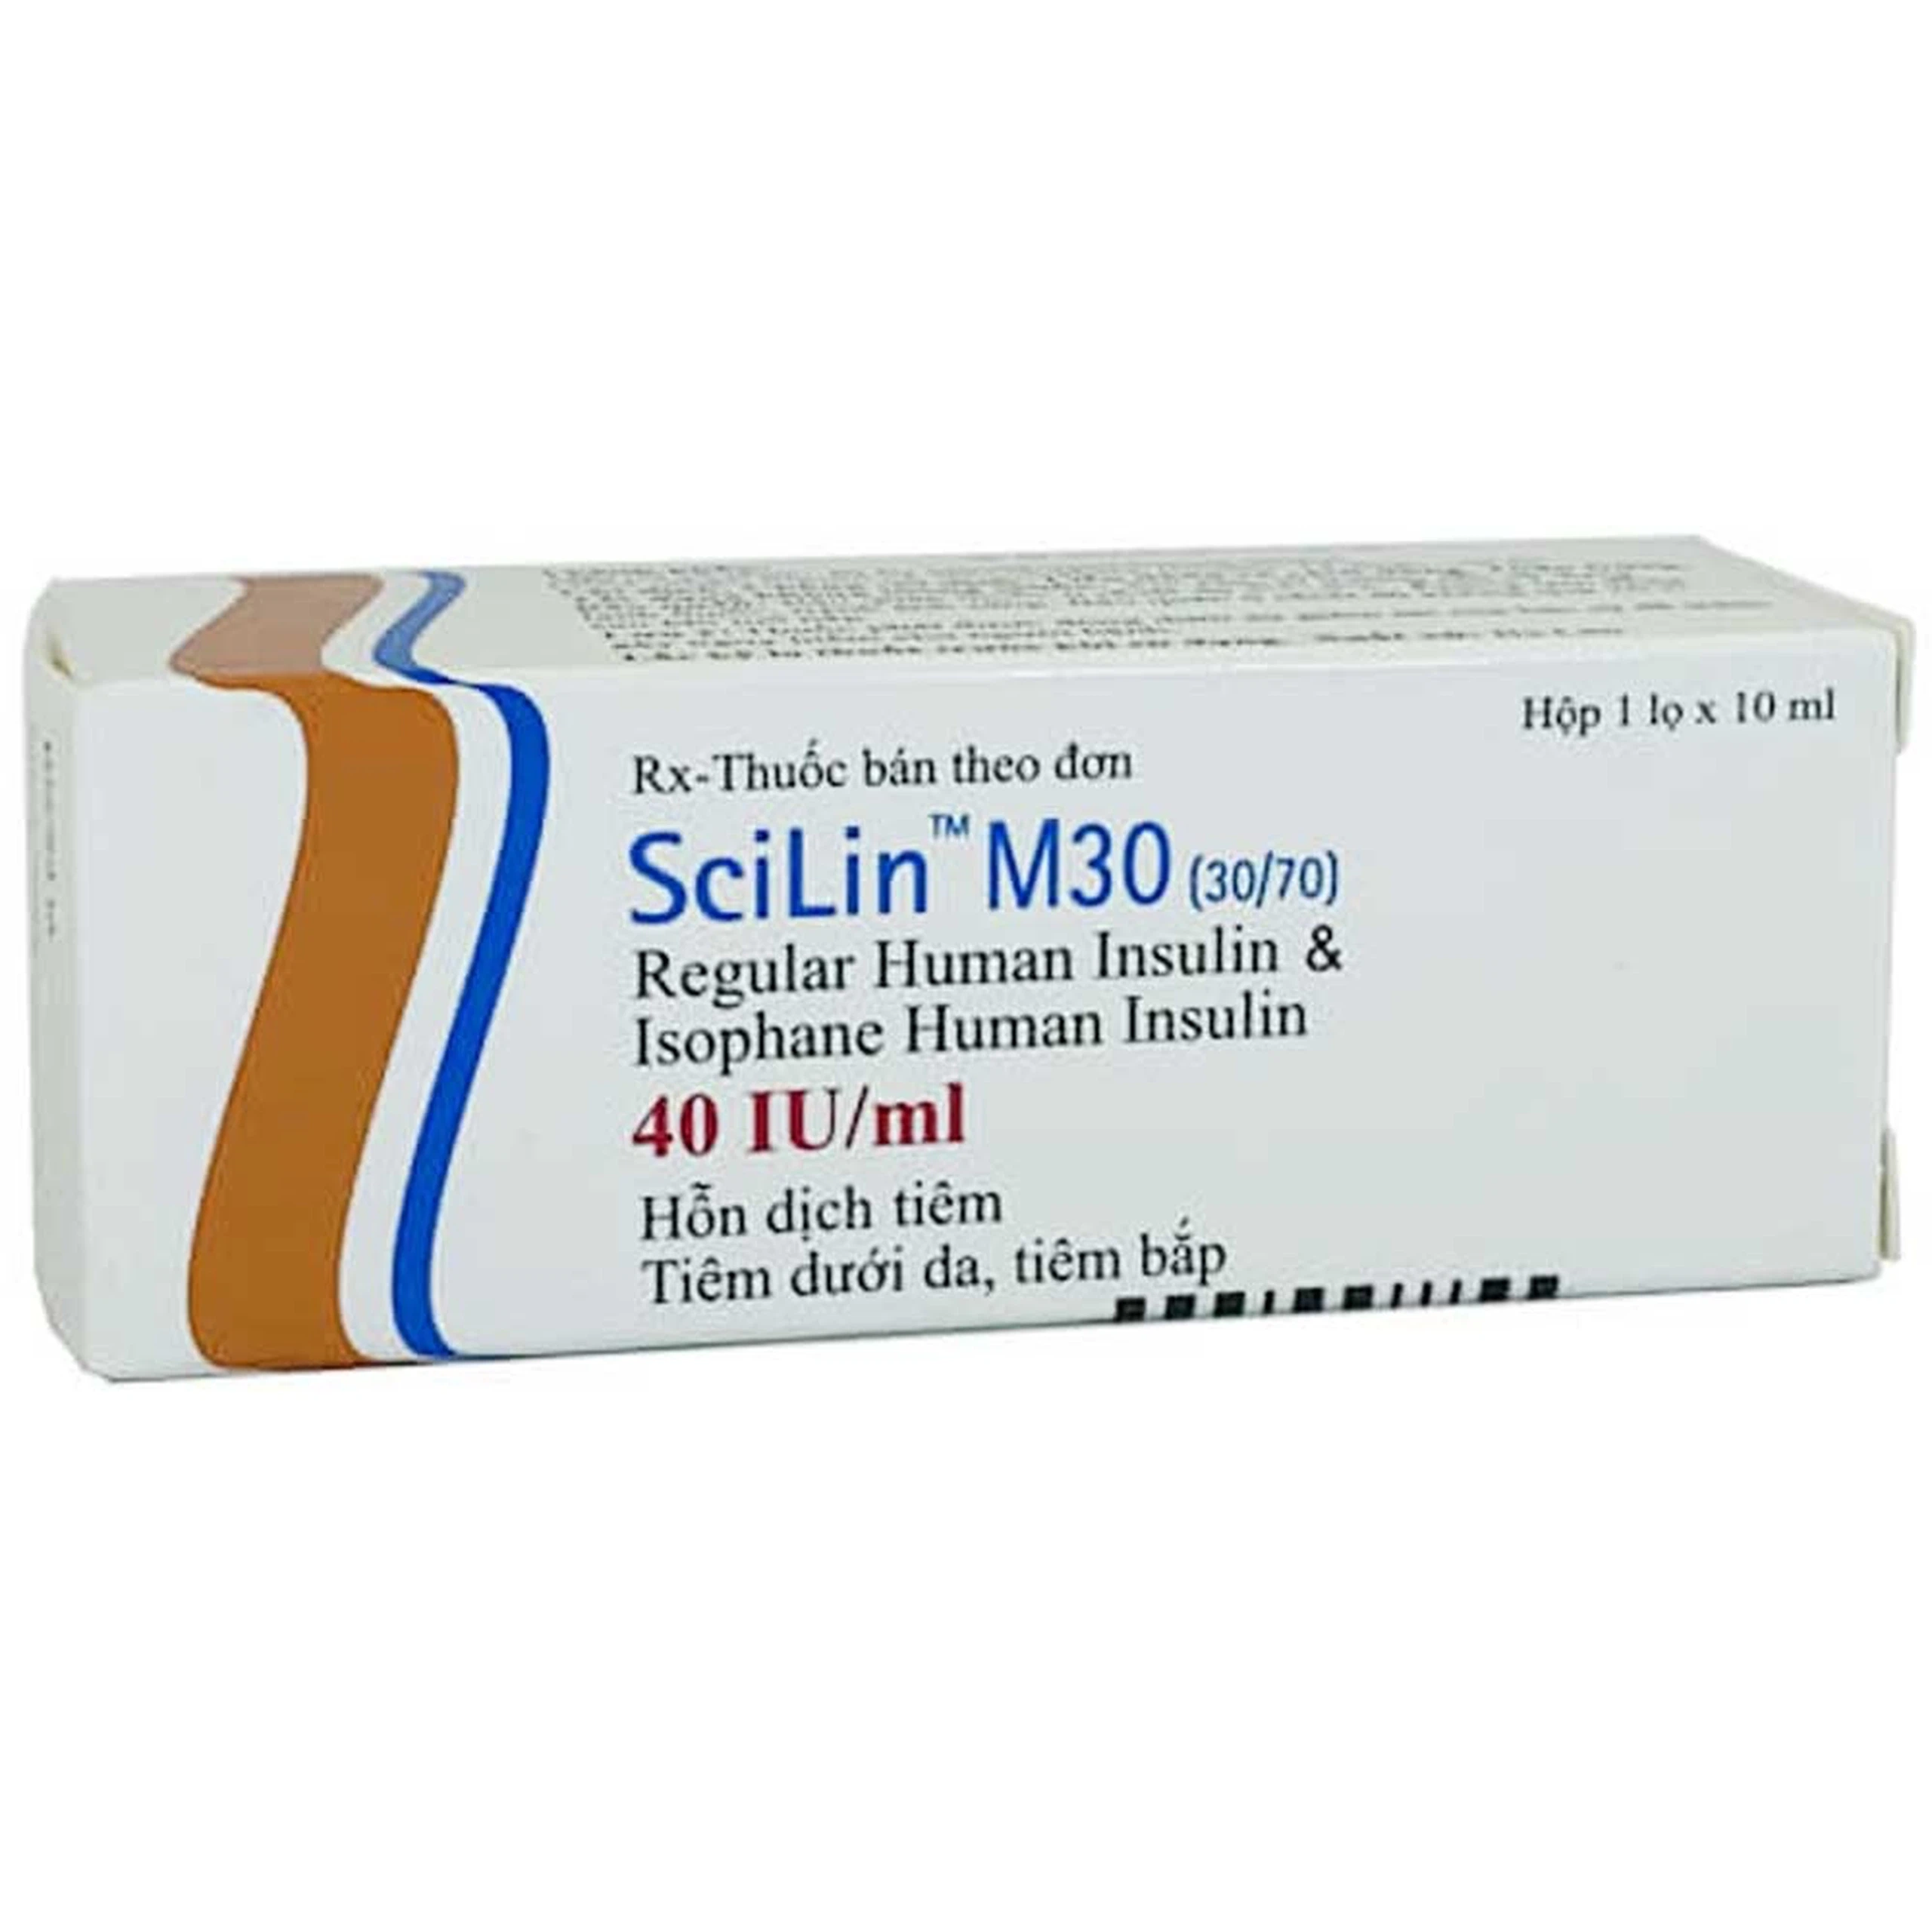 Hỗn dịch tiêm SciLin M30 40IU/ml Bioton điều trị đái tháo đường (10ml)